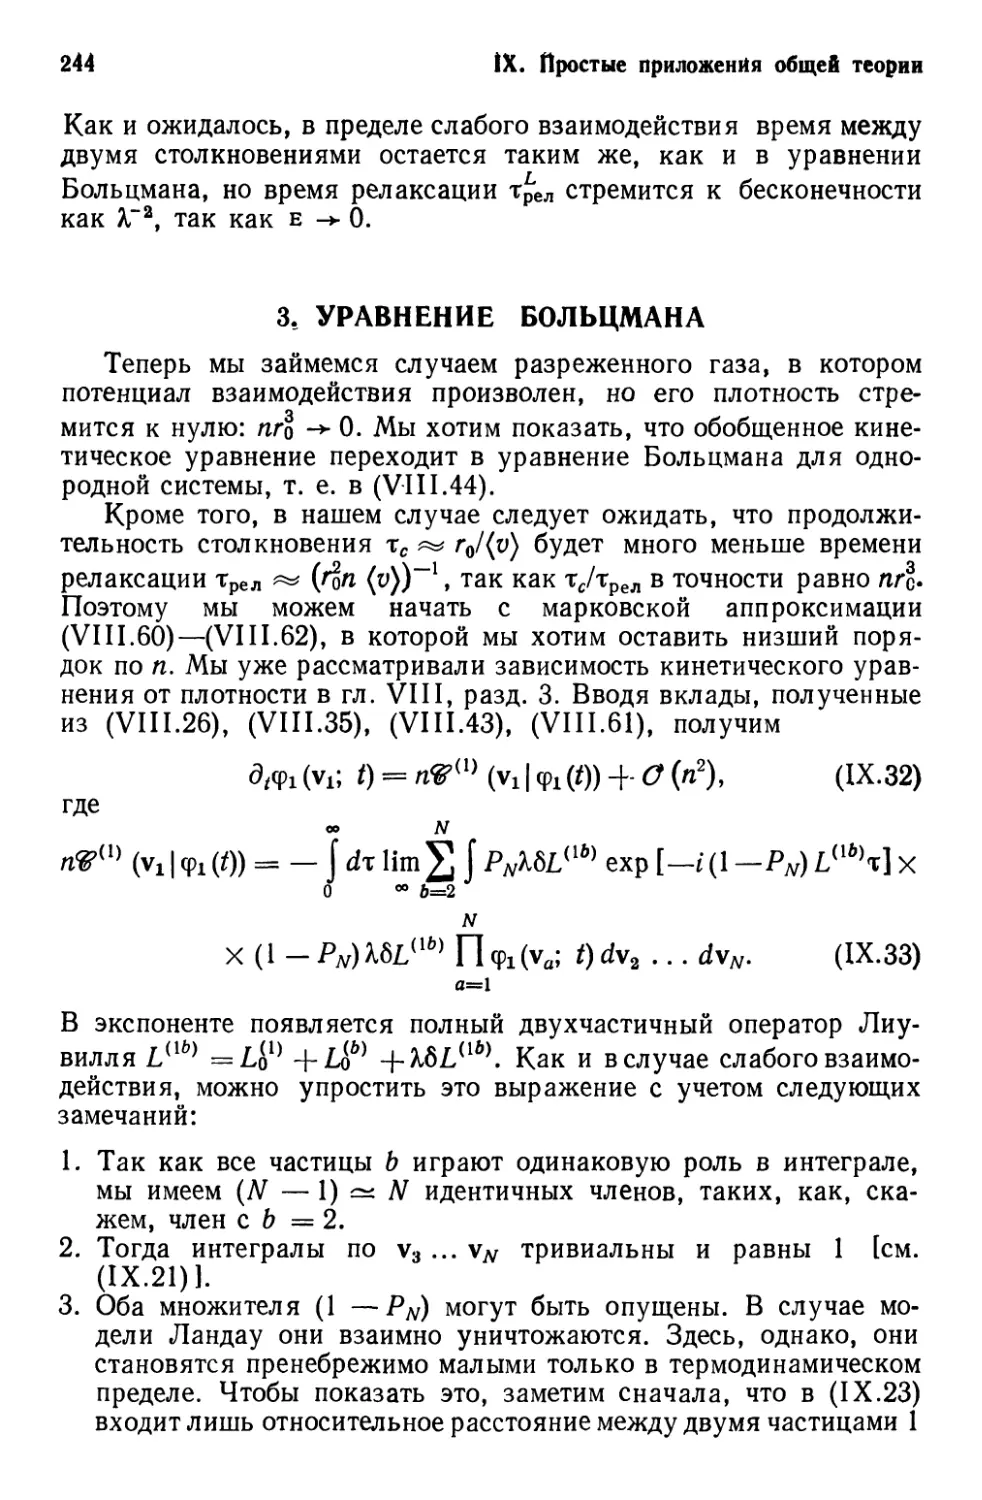 3. Уравнение Больцмана